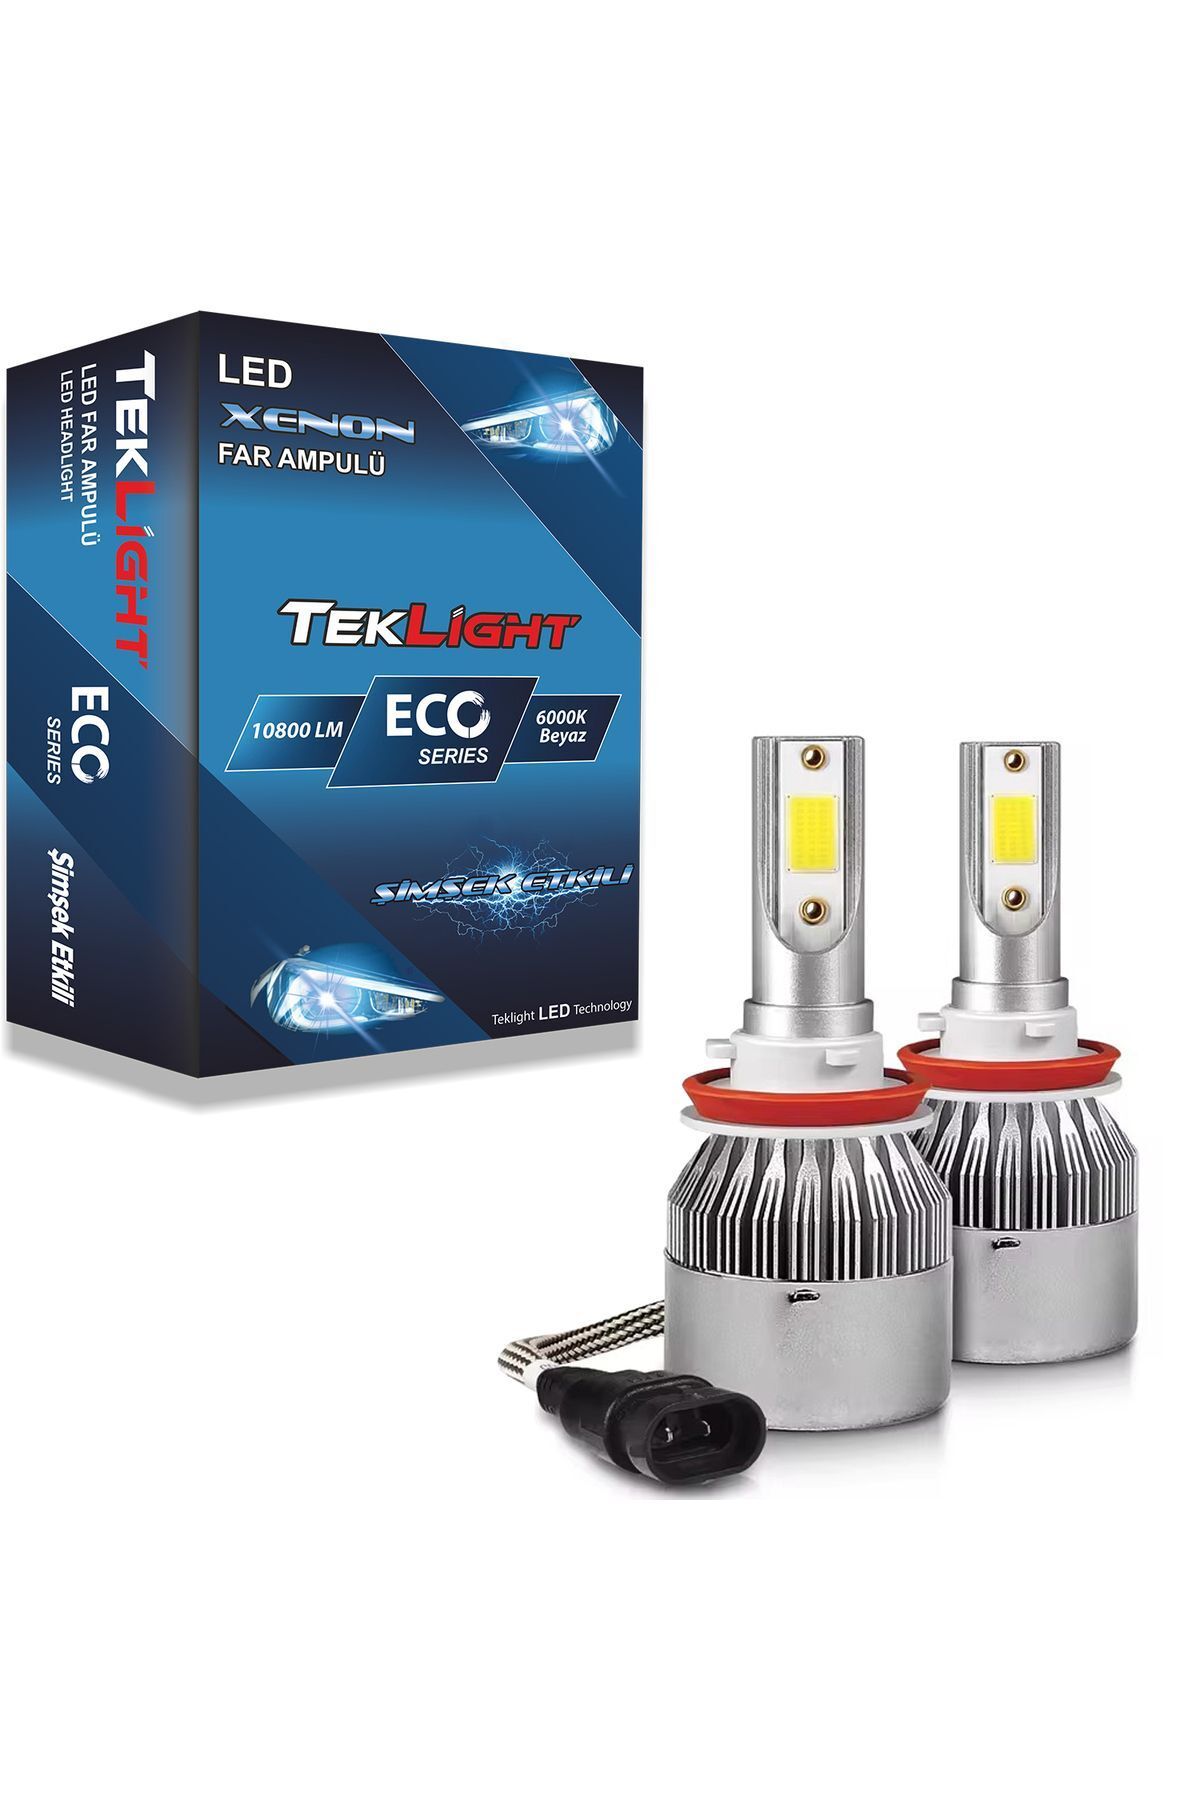 Teklight Eco (HB4) 9006 Led Xenon Far Ampulü 10800 Lümen Beyaz Zenon Şimşek Etkili